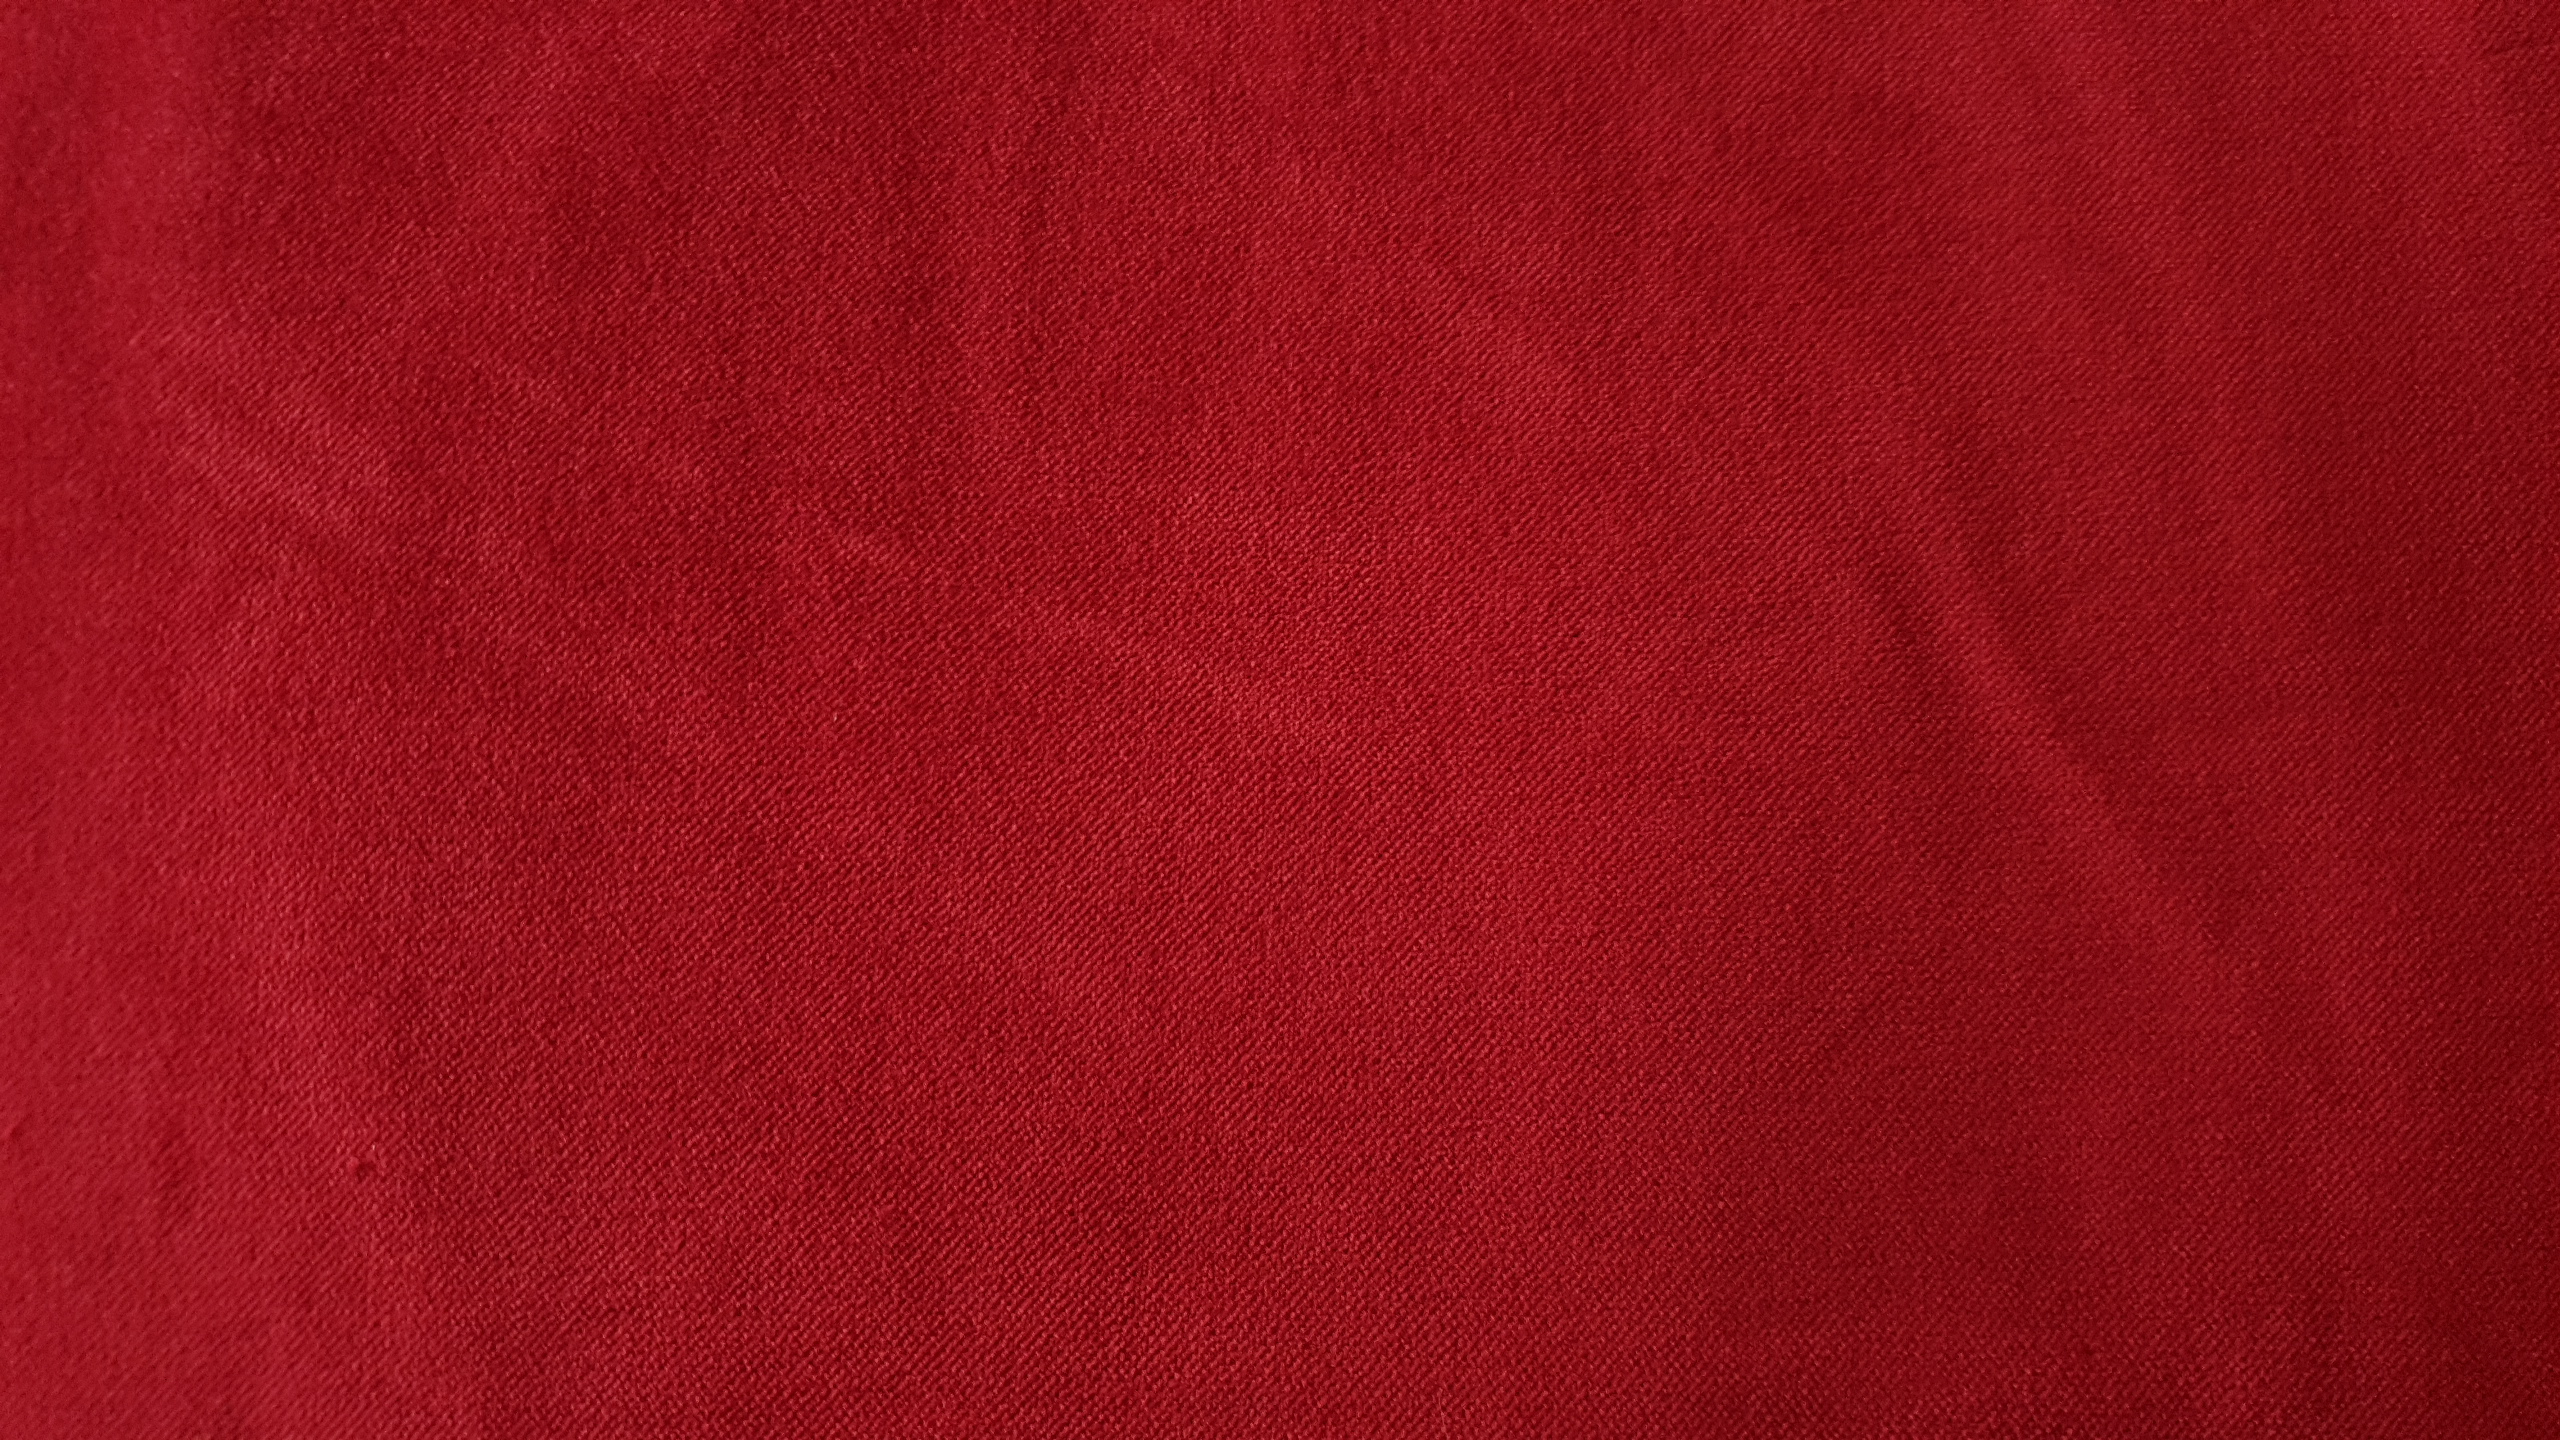 Cotton velvet- Red